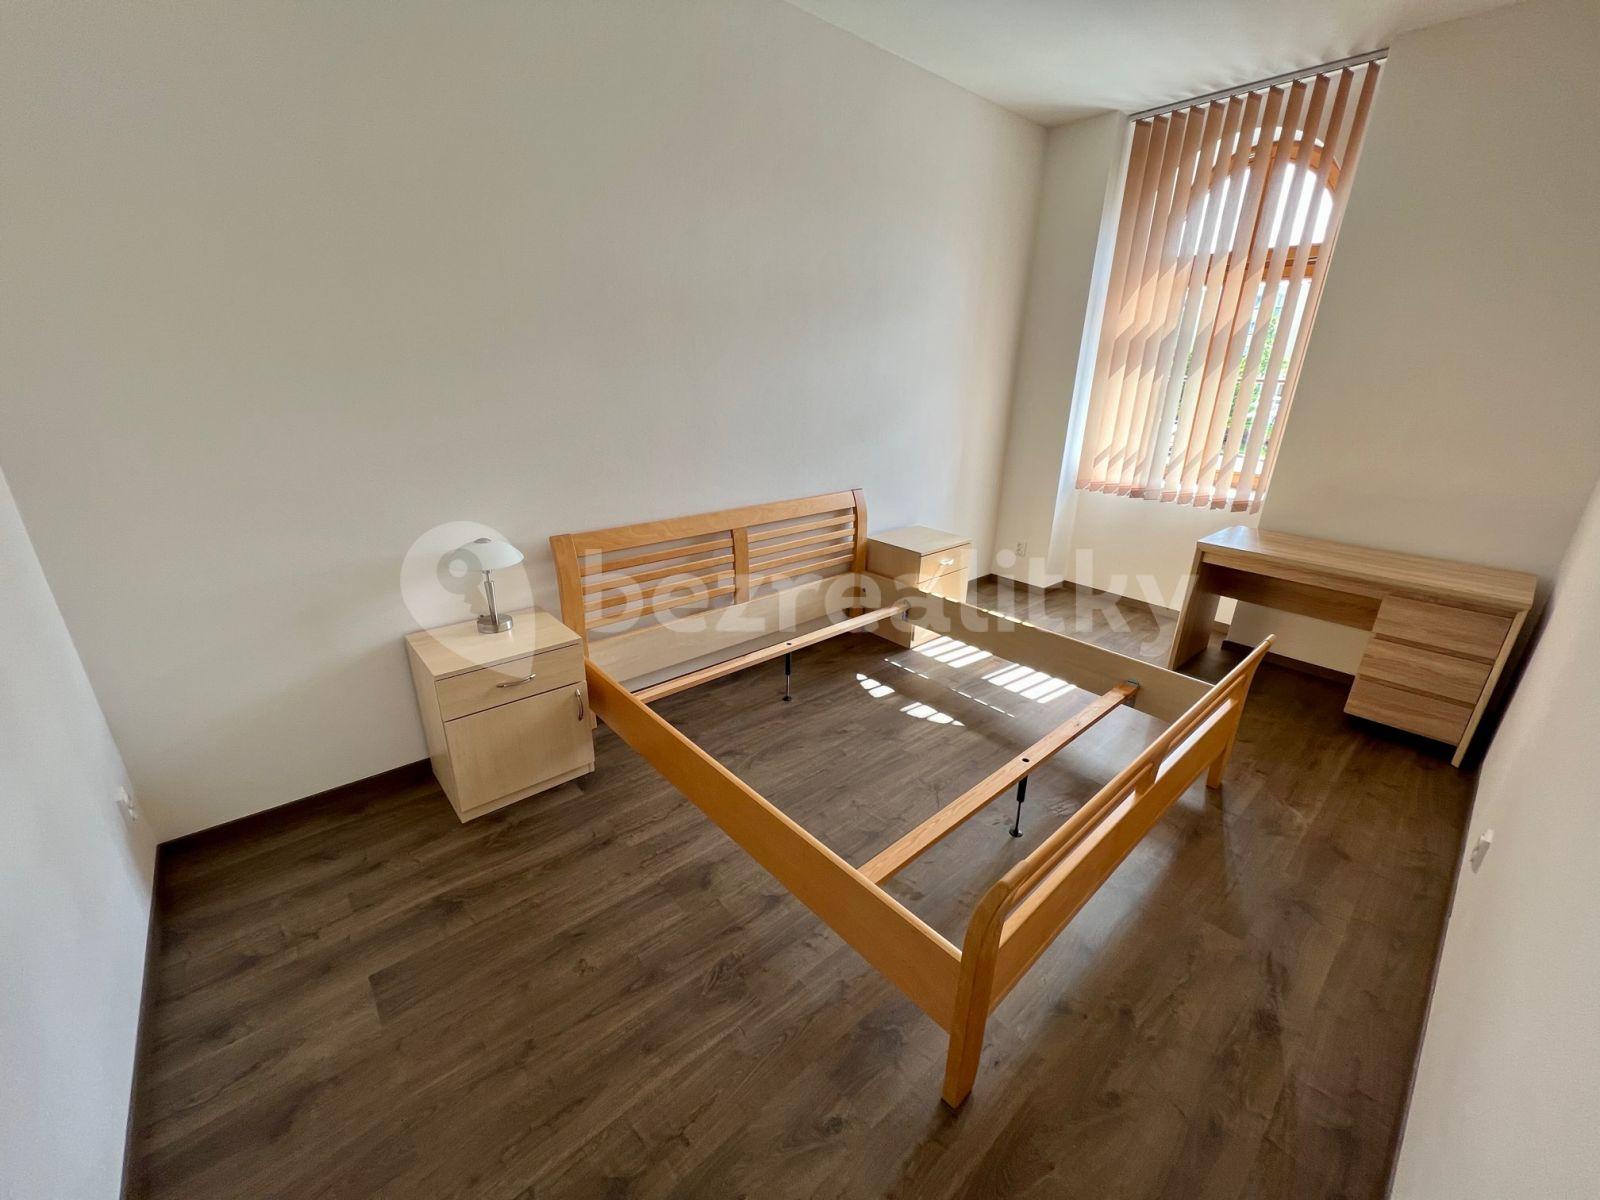 1 bedroom with open-plan kitchen flat to rent, 53 m², Jičínská, Mladá Boleslav, Středočeský Region